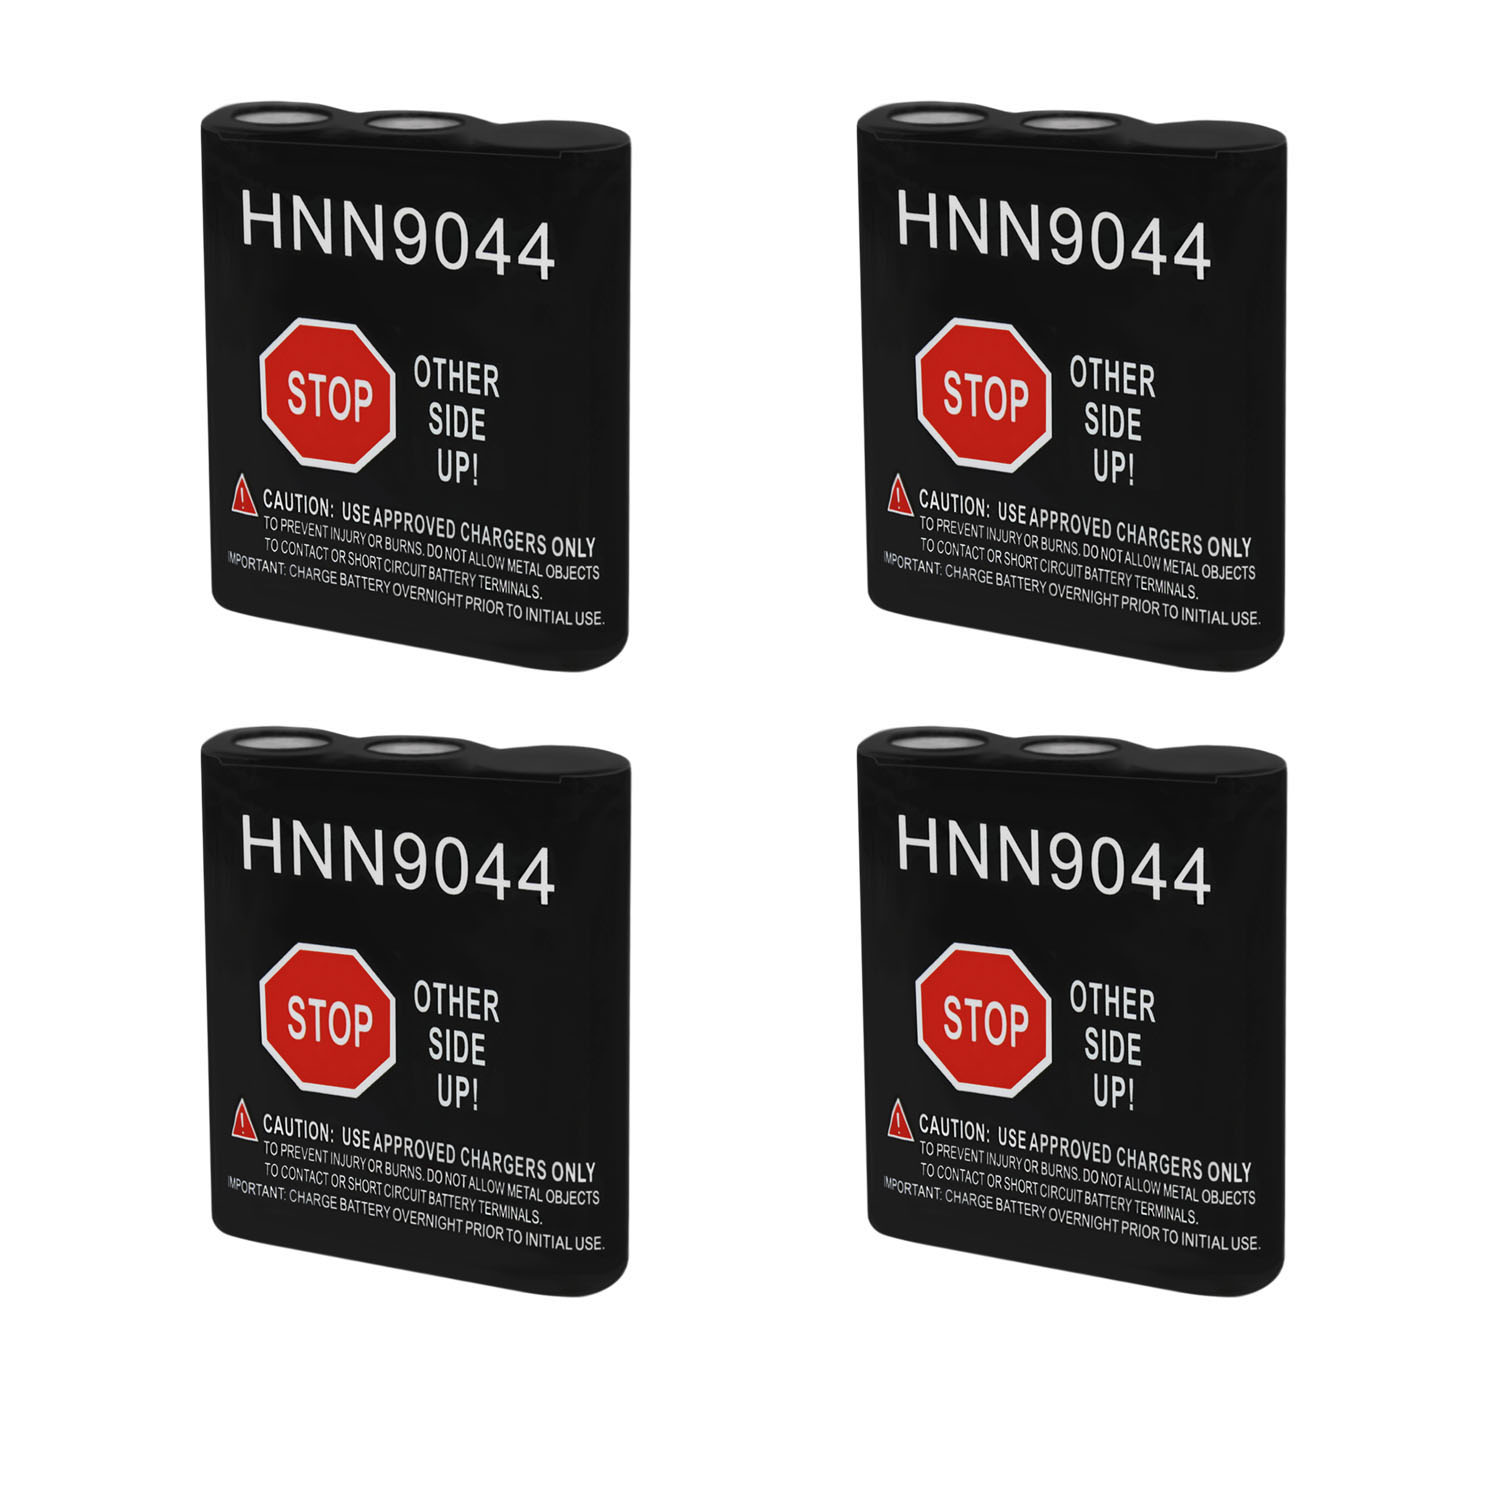 HNN9044 Replacement for Motorola HNN9056, HNN9056a - 4 Pack